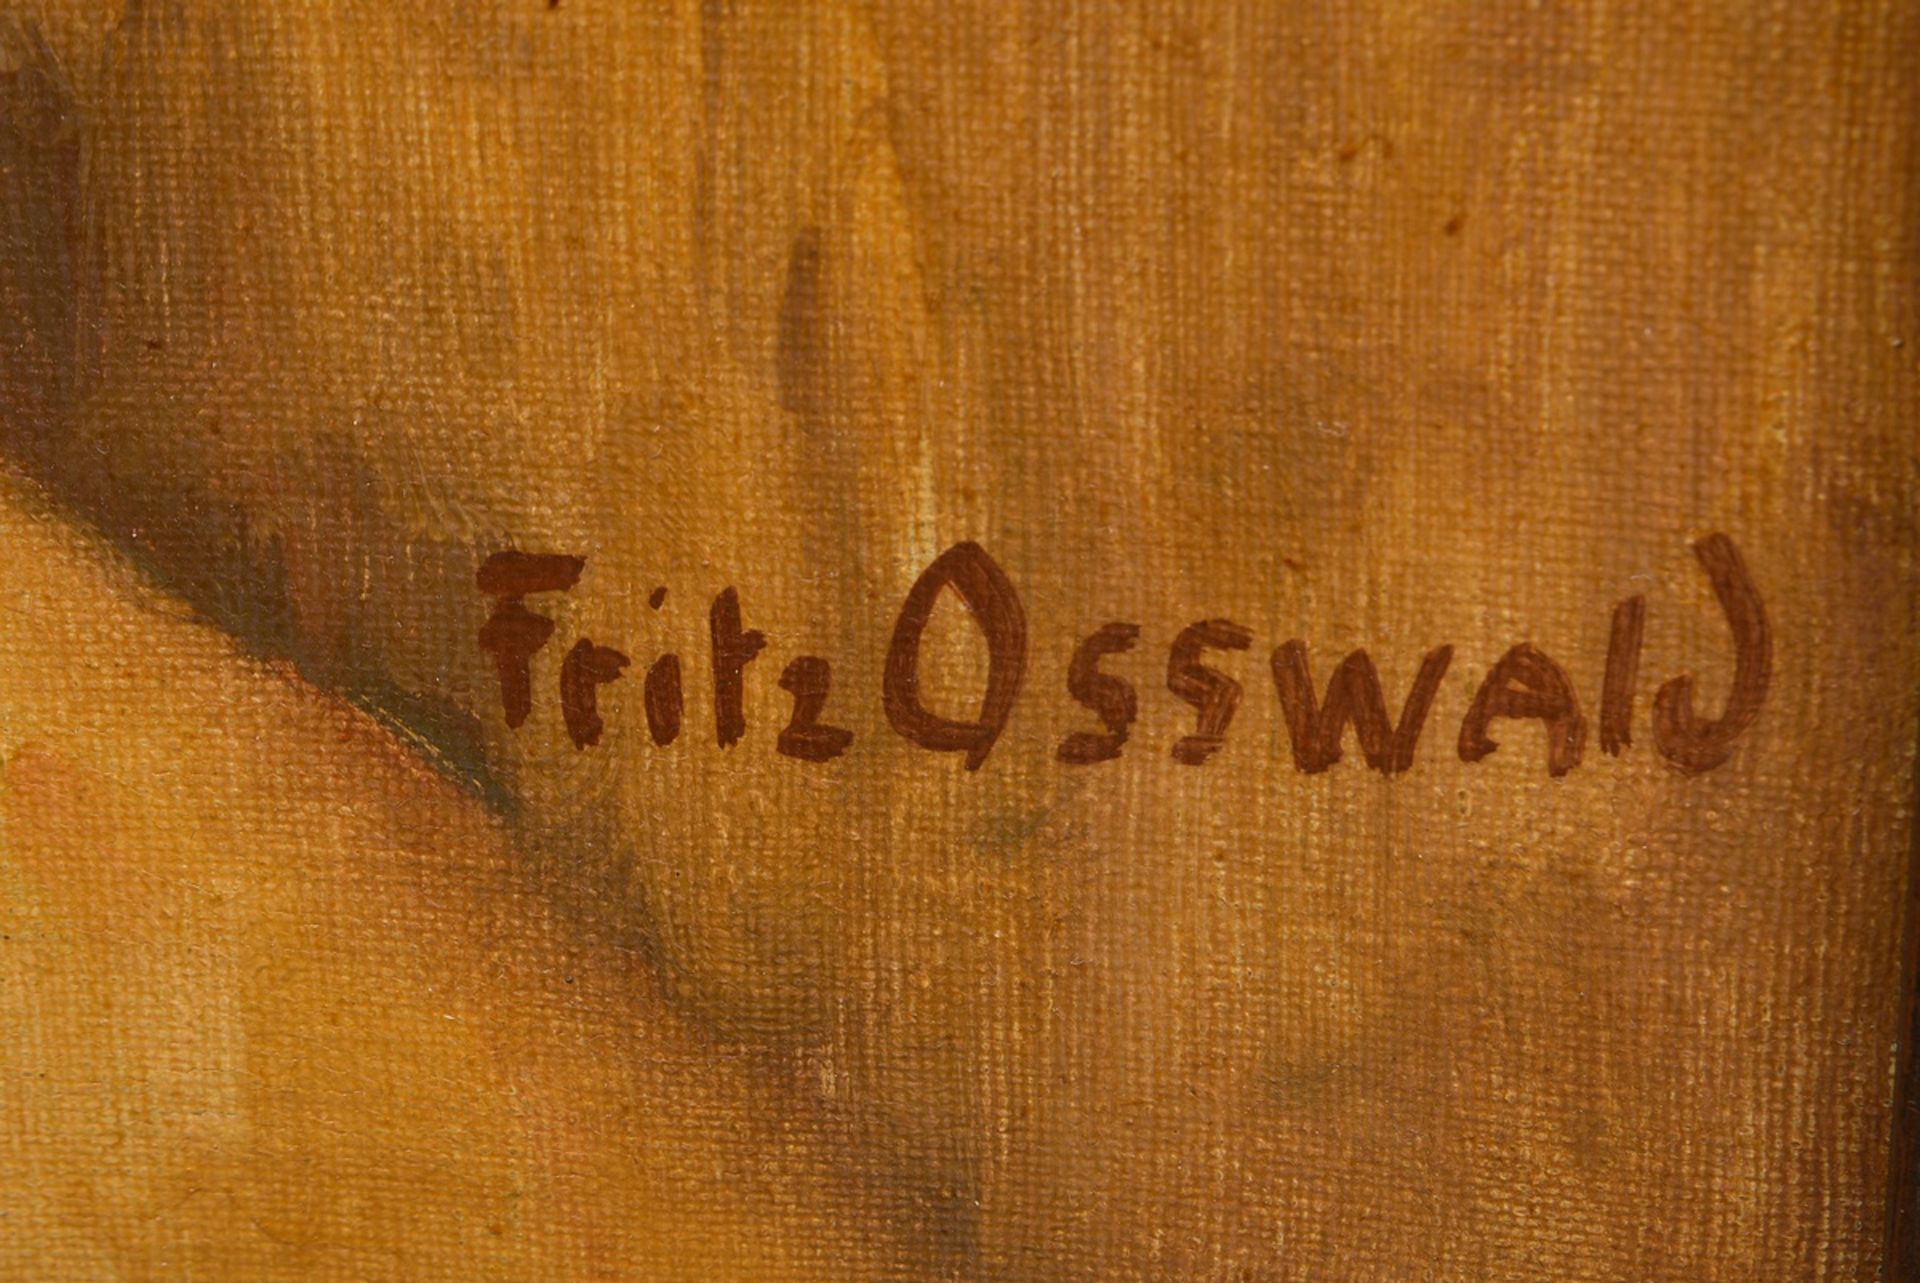 Osswald, Fritz (1878-1966) "Blumenstillleben mit Steinzeugkrug", Öl/Leinwand, u.r. sign., 111x101cm - Bild 2 aus 3